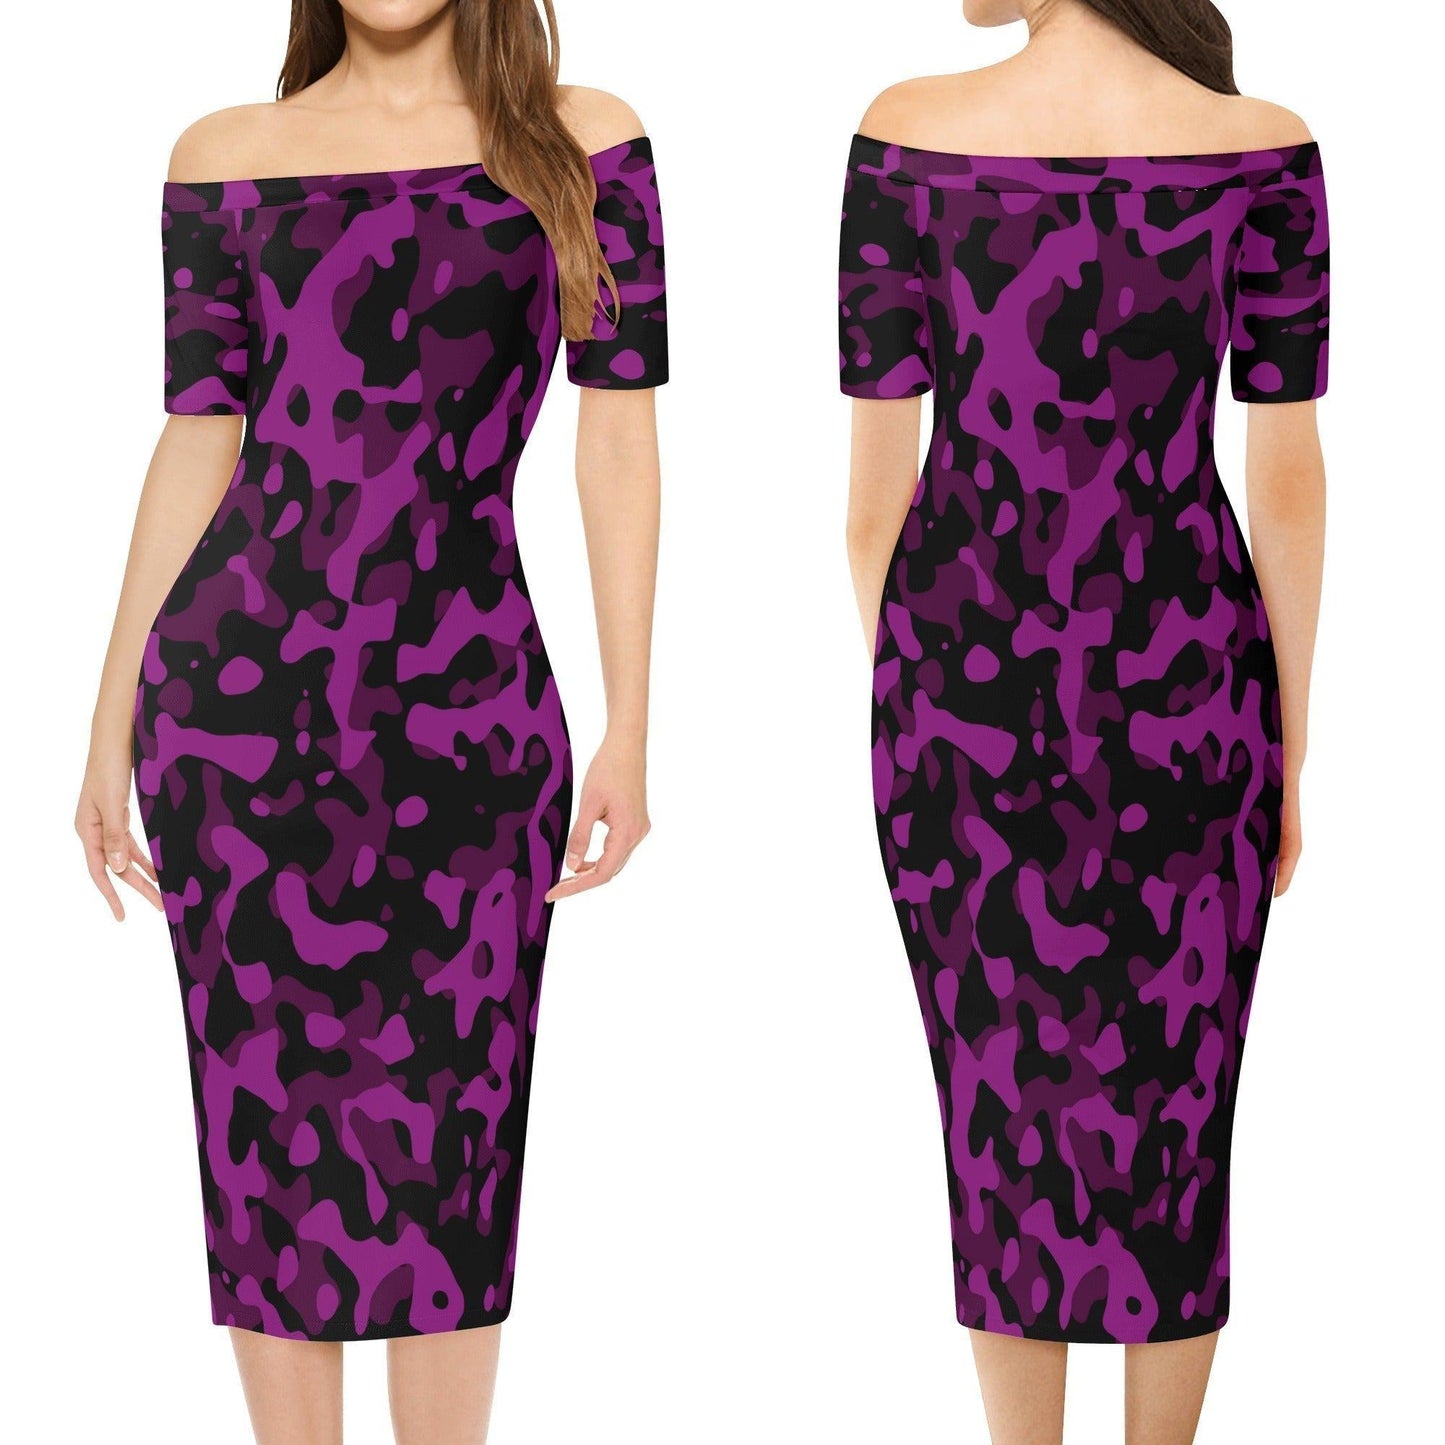 Black Violet Camouflage Off-Shoulder-Kleid -- Black Violet Camouflage Off-Shoulder-Kleid - undefined Off-Shoulder-Kleid | JLR Design